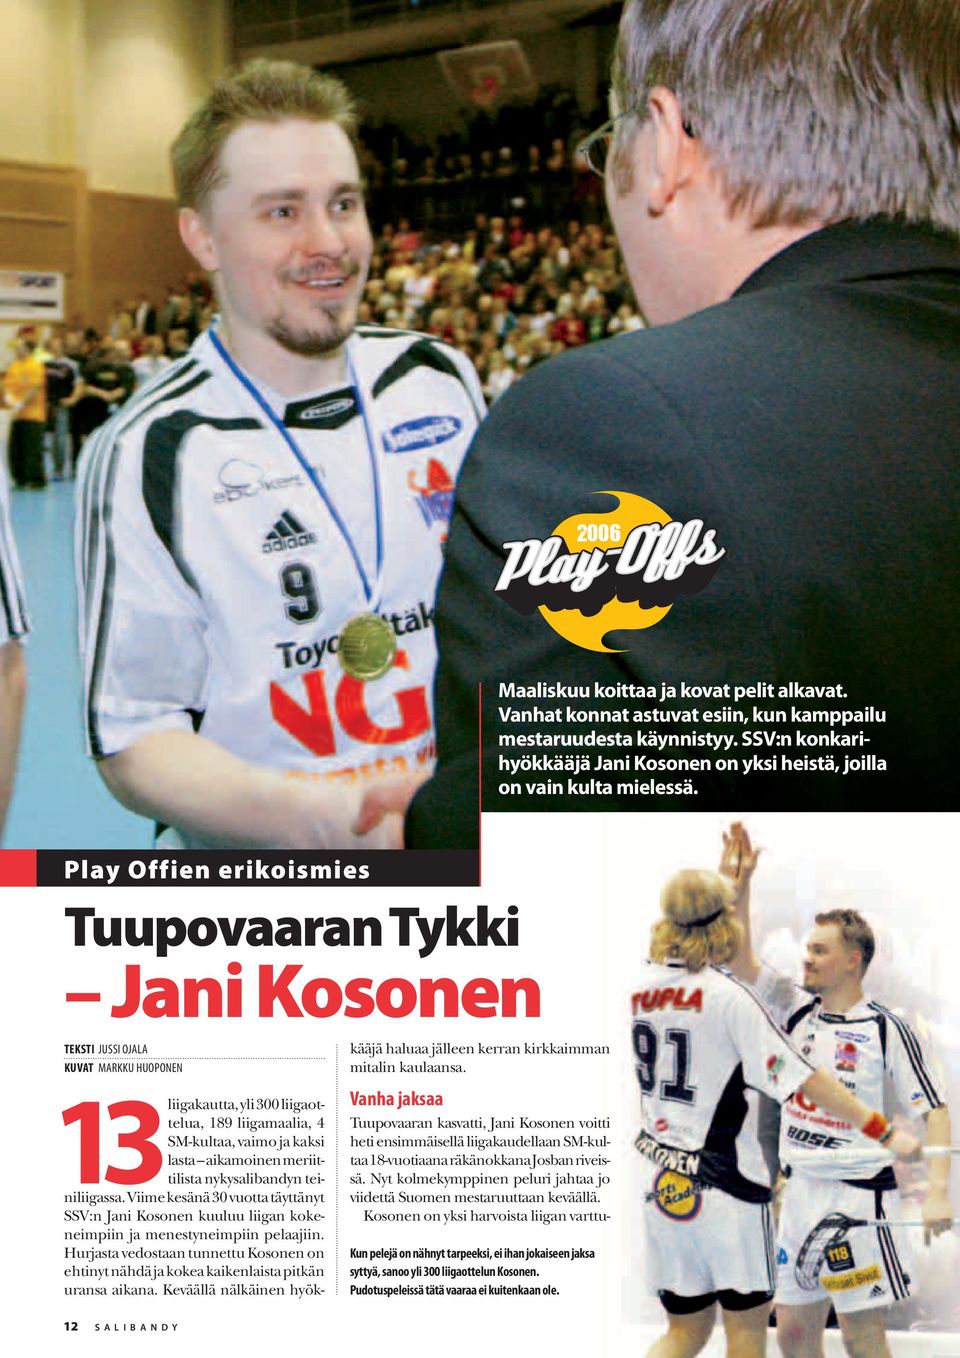 meriittilista nykysalibandyn teiniliigassa. Viime kesänä 30 vuotta täyttänyt SSV:n Jani Kosonen kuuluu liigan kokeneimpiin ja menestyneimpiin pelaajiin.